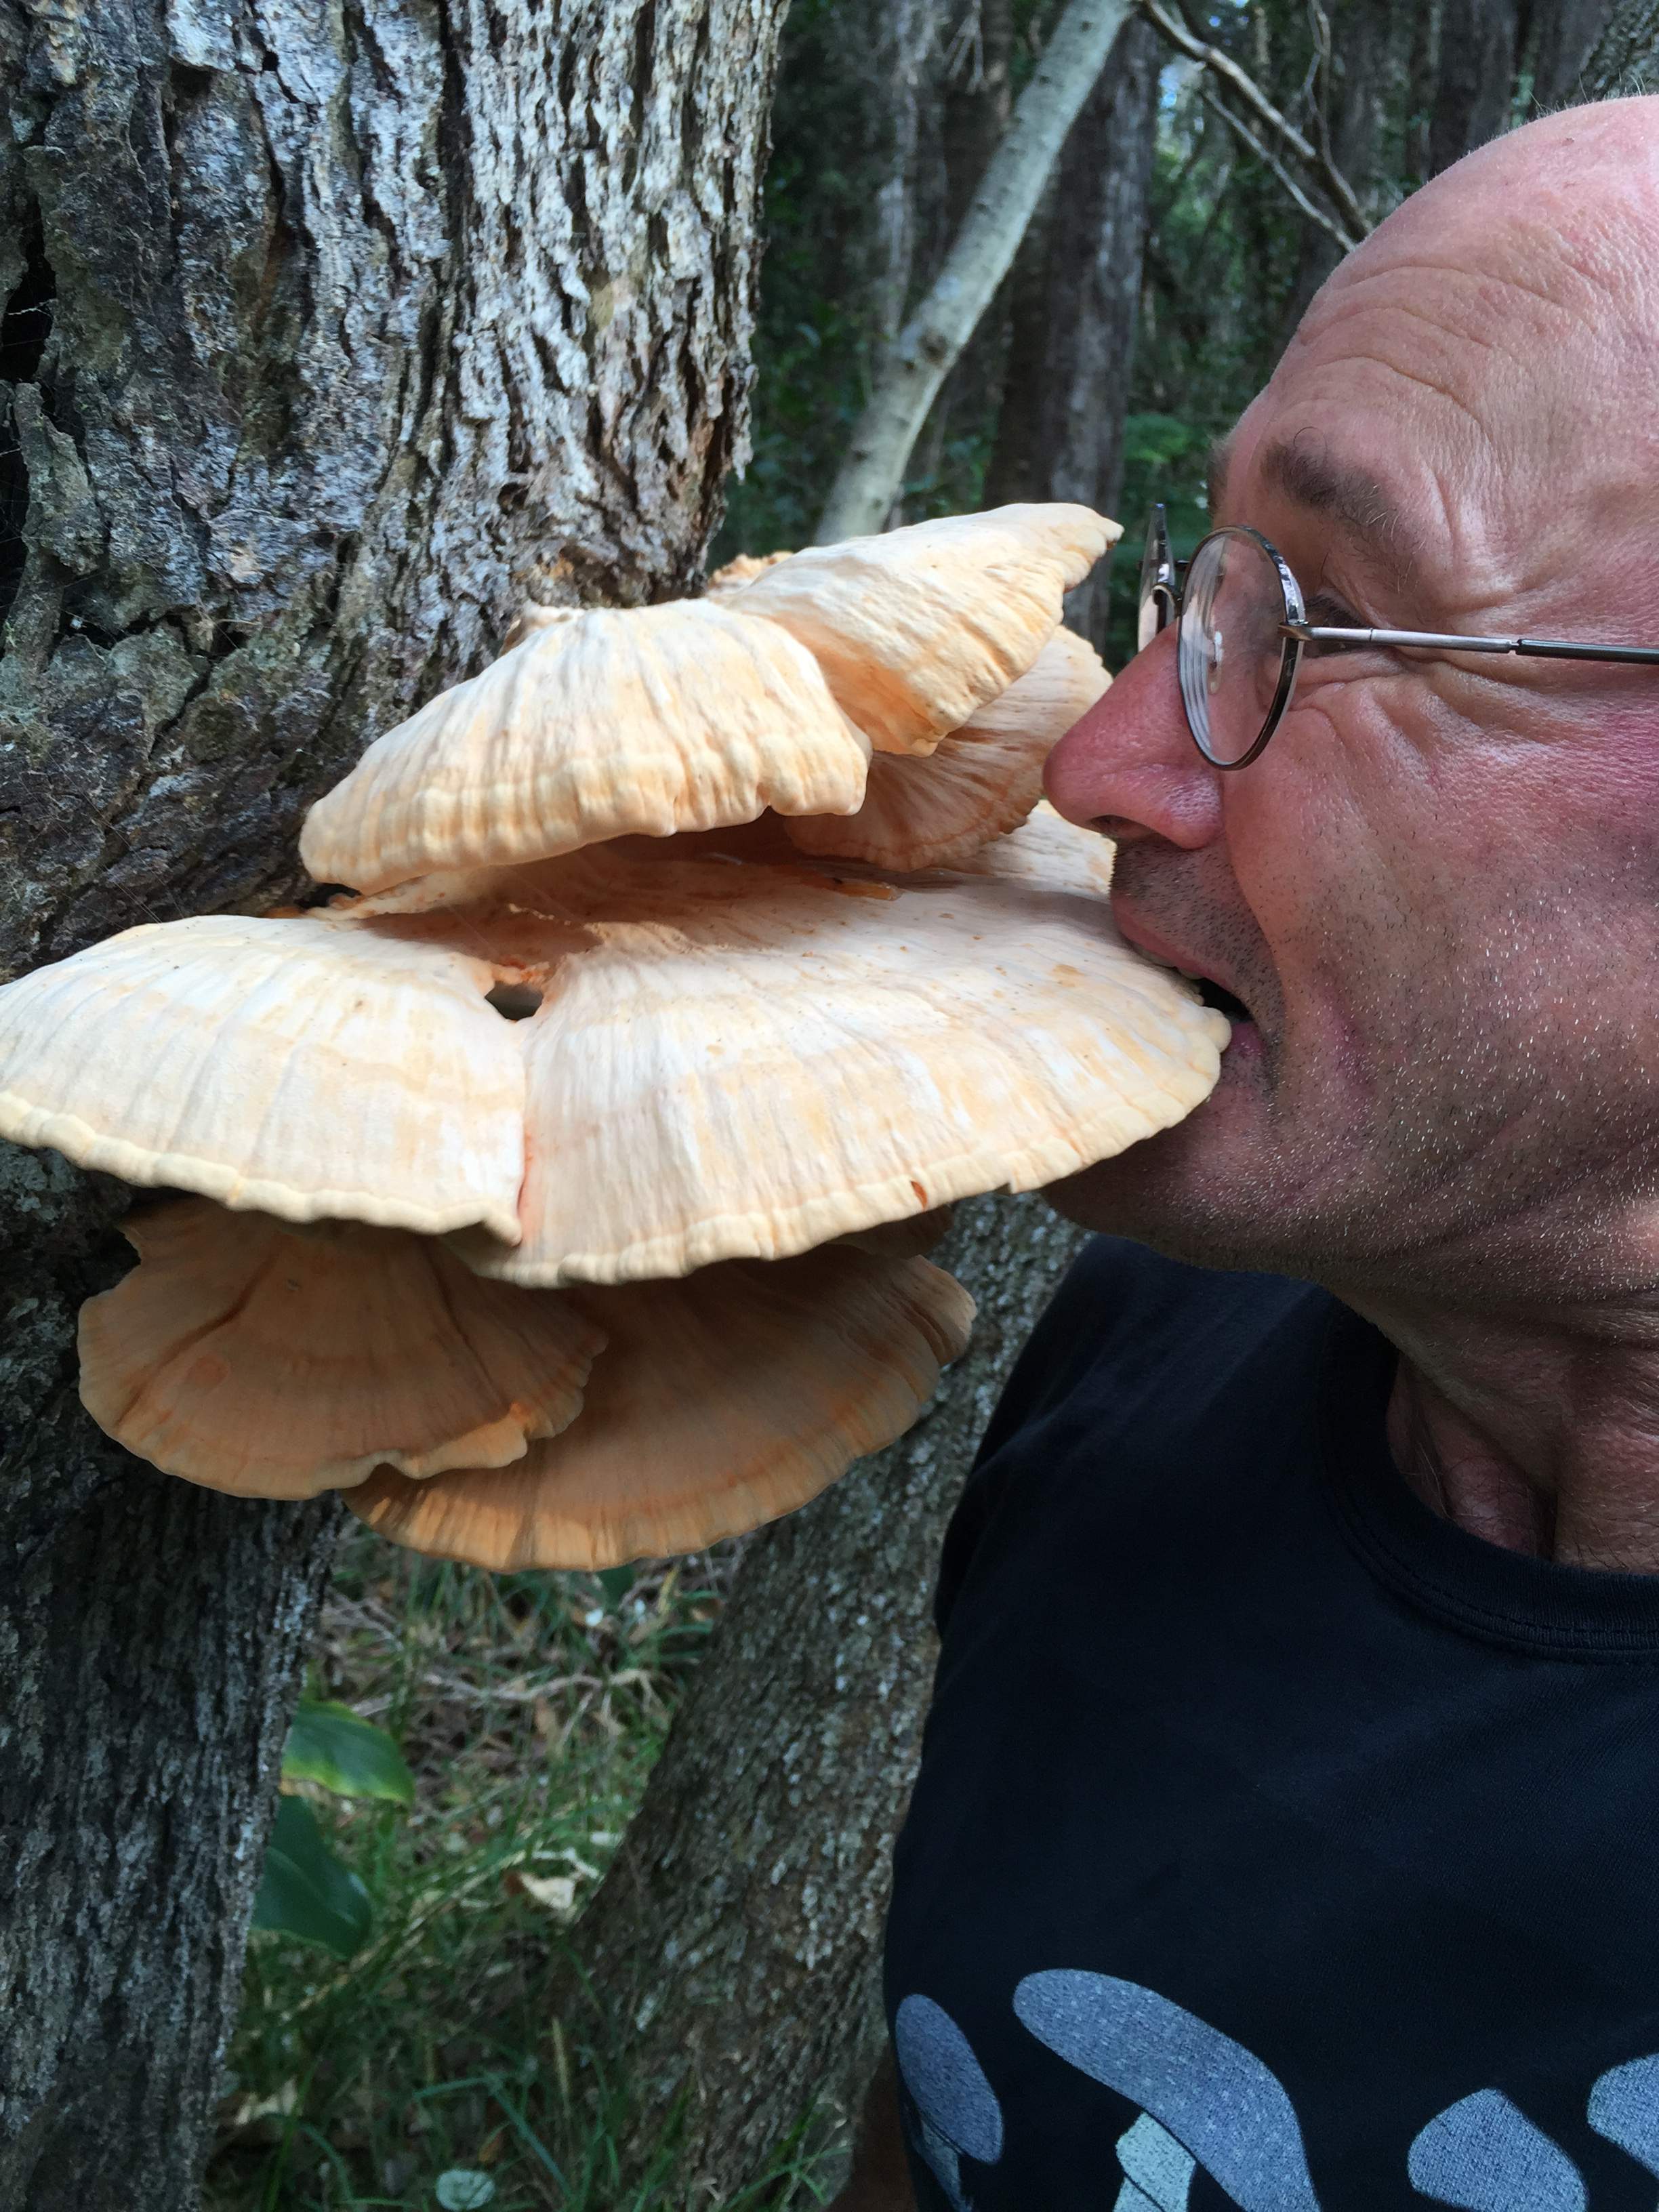 Hugh doesn't eat mushrooms